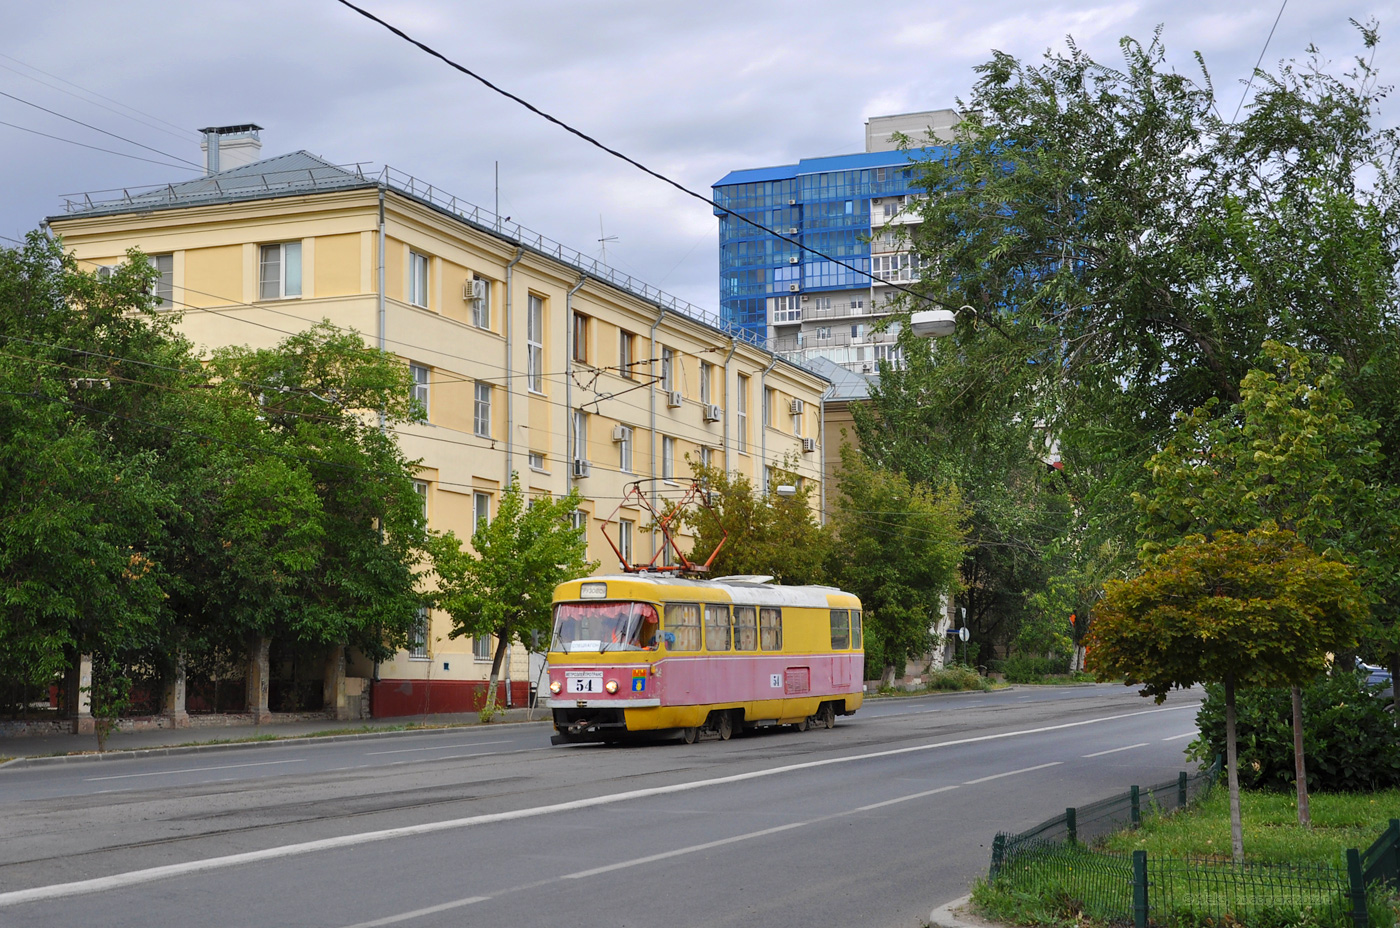 Volgograd, Tatra T3SU (2-door) # 54